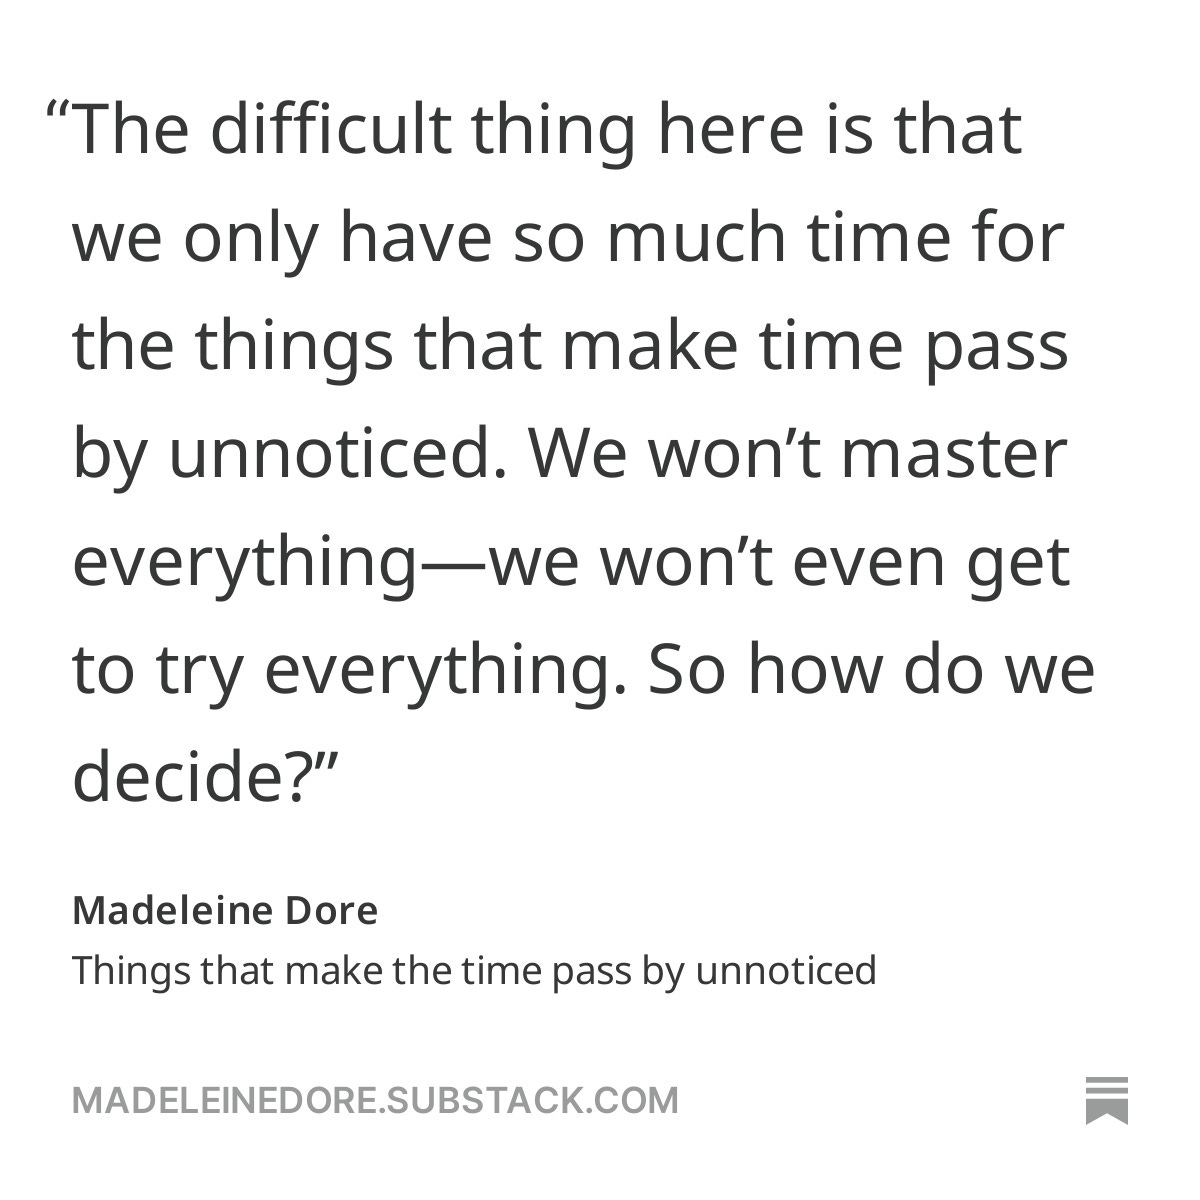 madeline dore quote